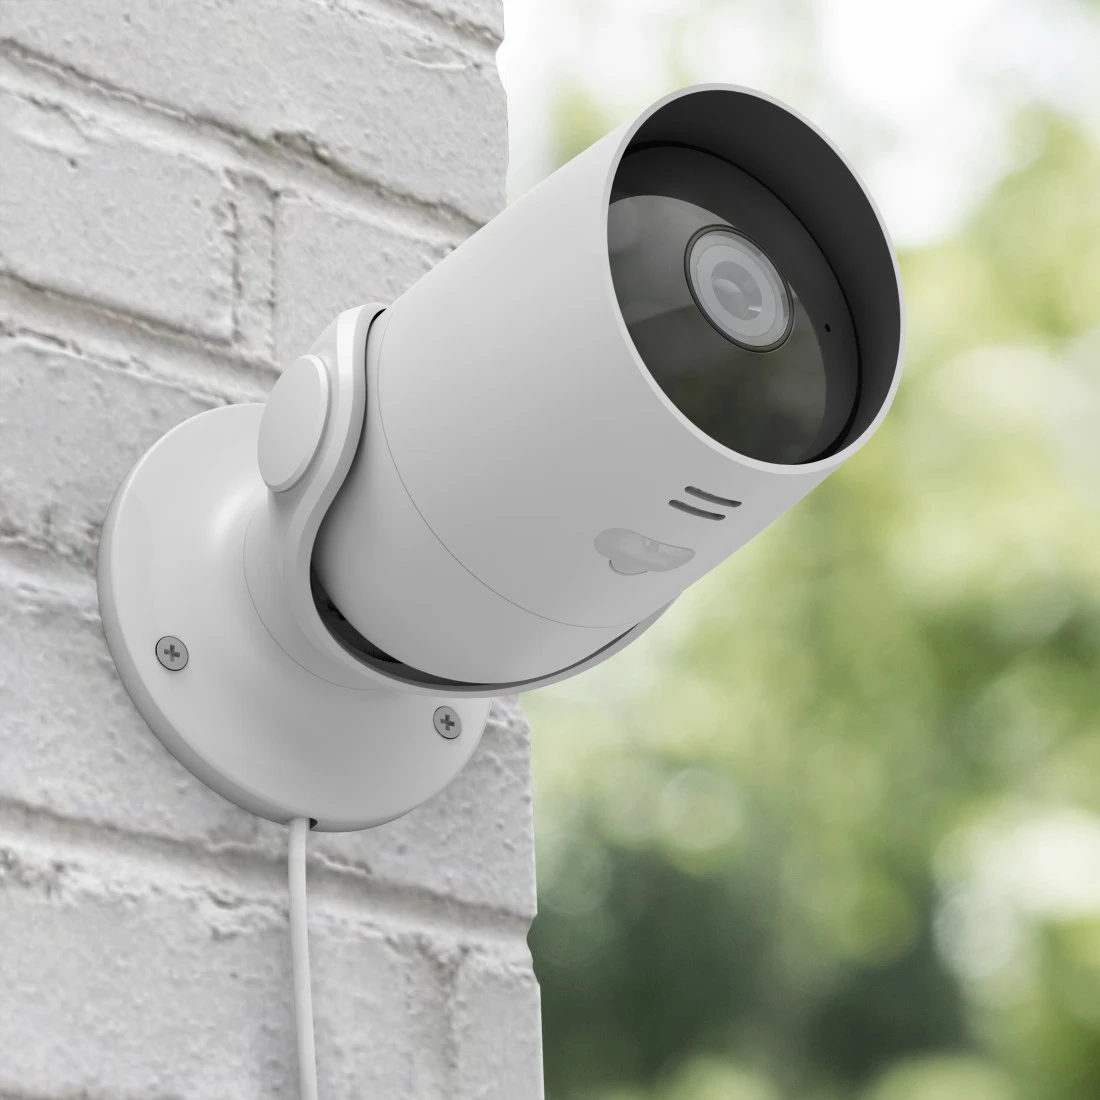 Caméra de surveillance : seulement 25 euros pour un produit star